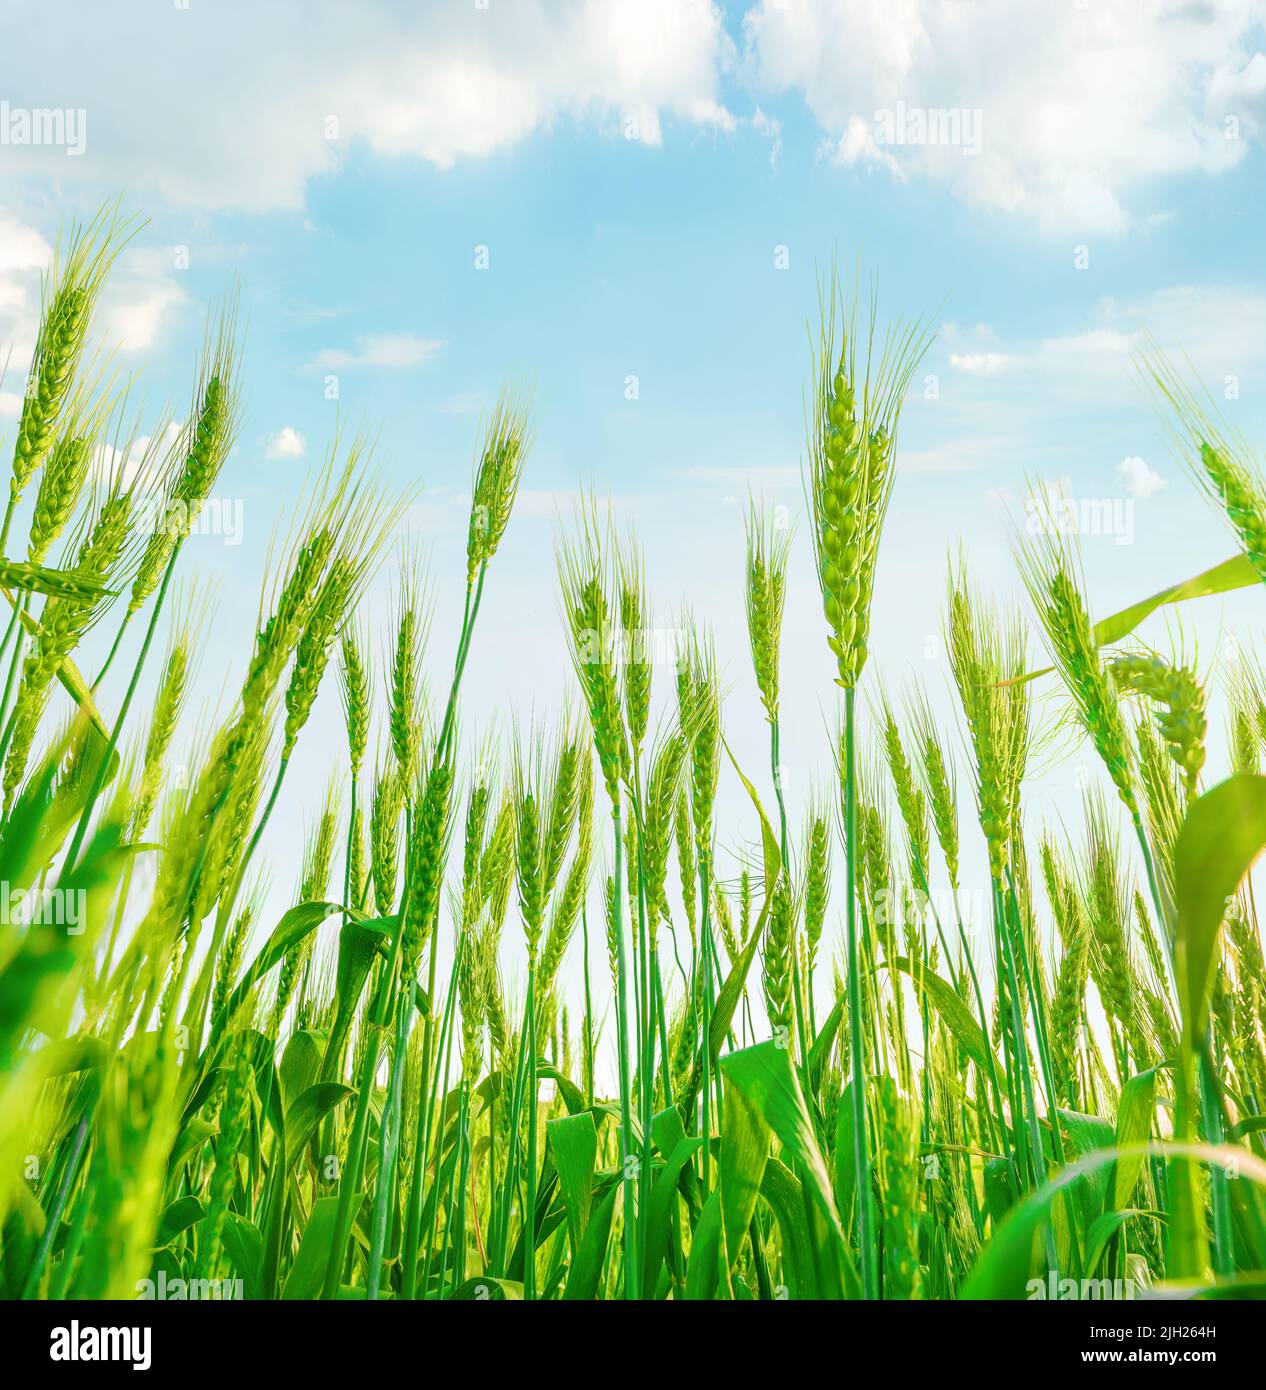 Spighe di grano verde che crescono in campo. Guarda verso l'alto contro il cielo azzurro con le nuvole Foto Stock